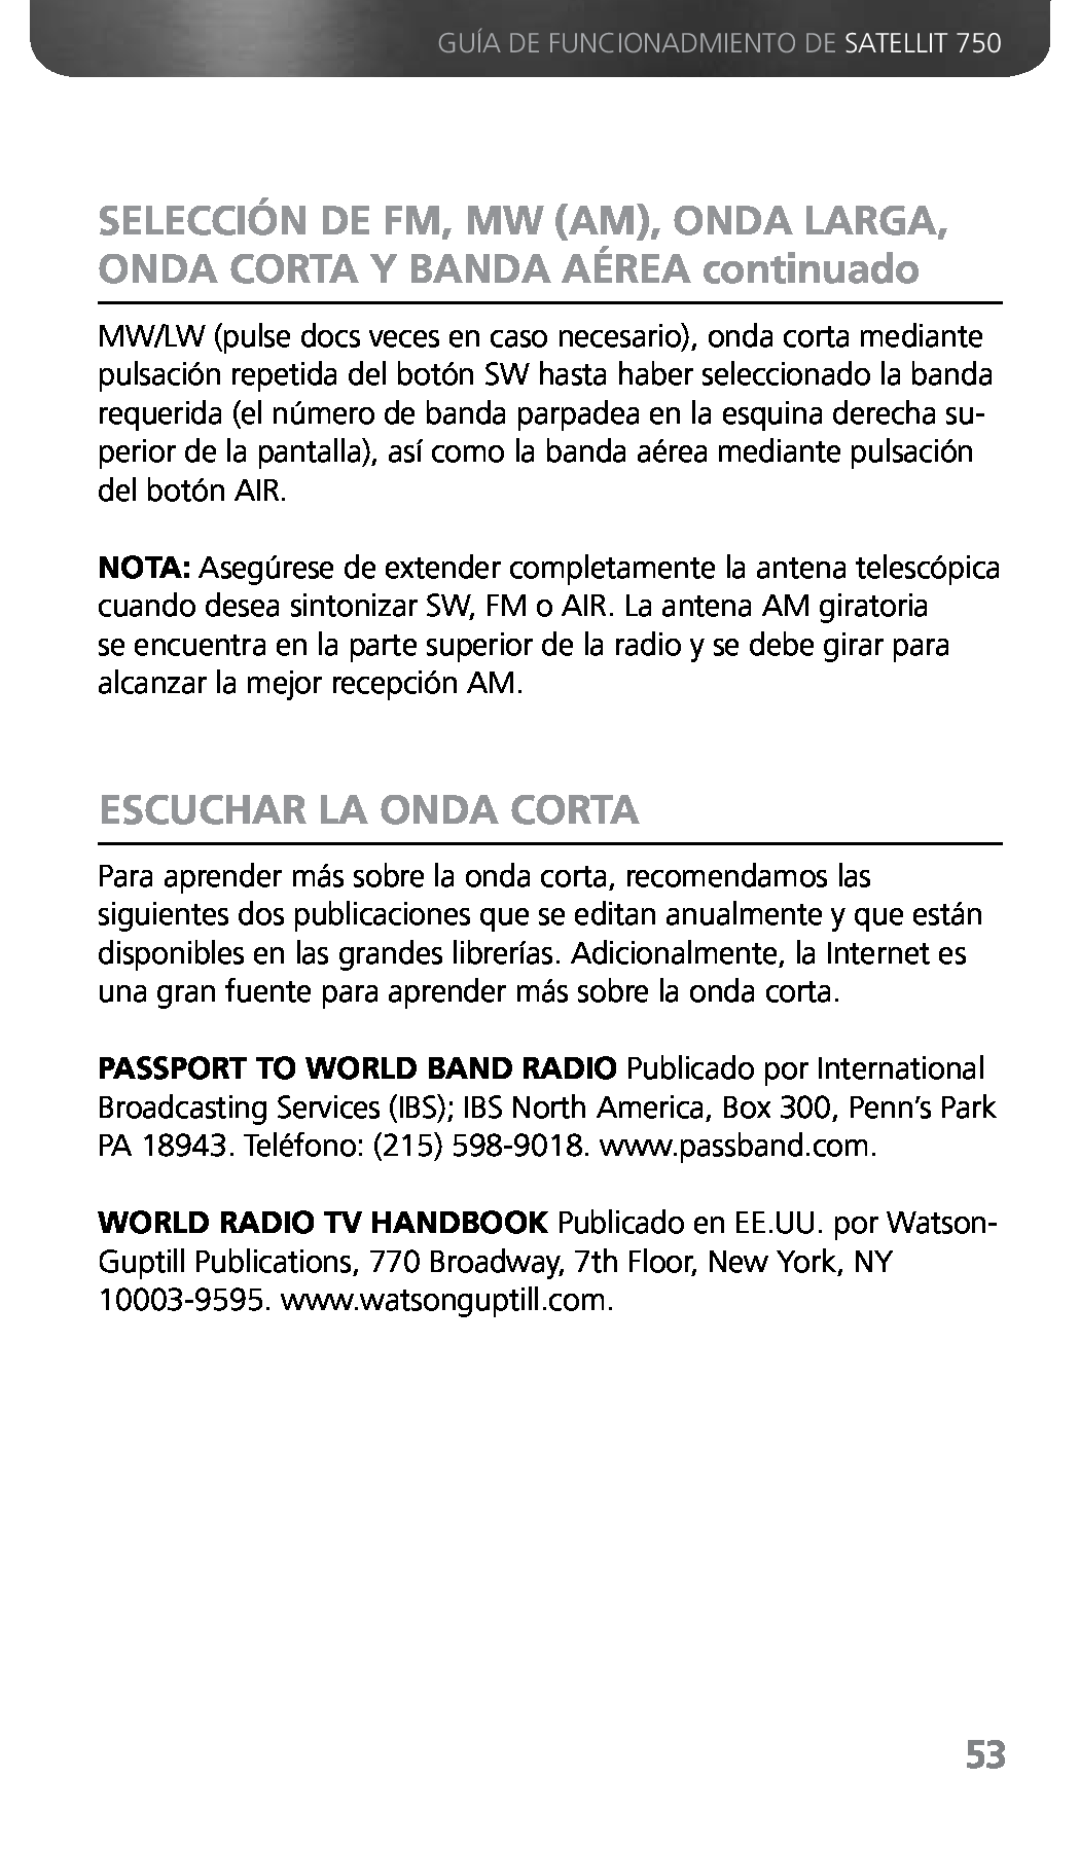 Grundig 750 owner manual Escuchar La Onda Corta, Guía De Funcionadmiento De Satellit 